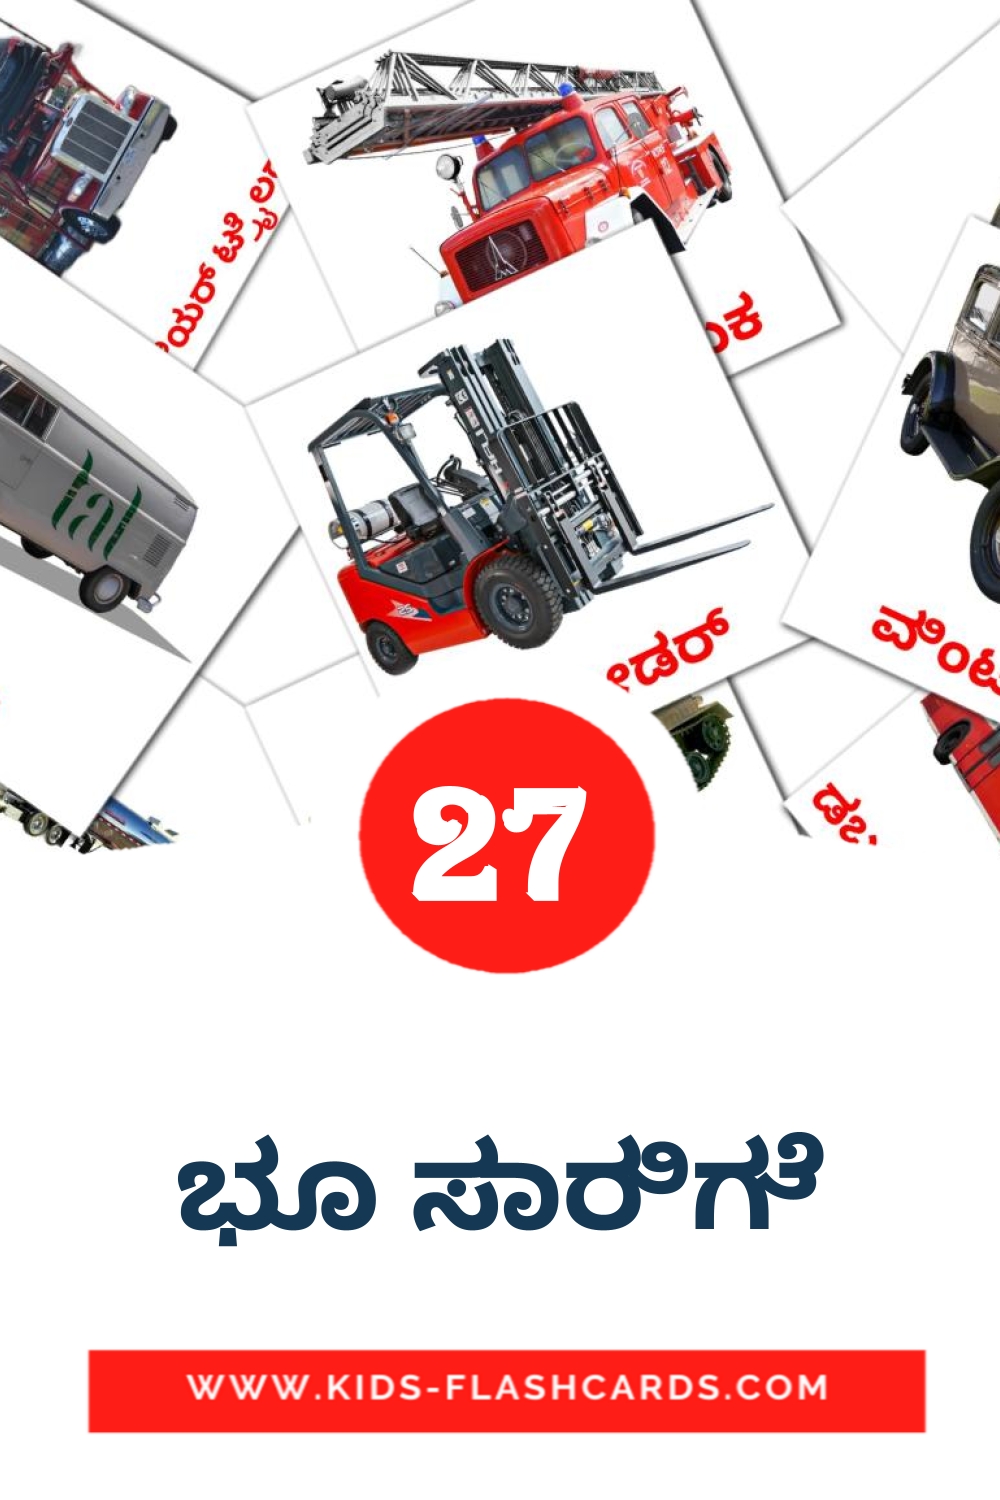 27 tarjetas didacticas de ಭೂ ಸಾರಿಗೆ para el jardín de infancia en kannada